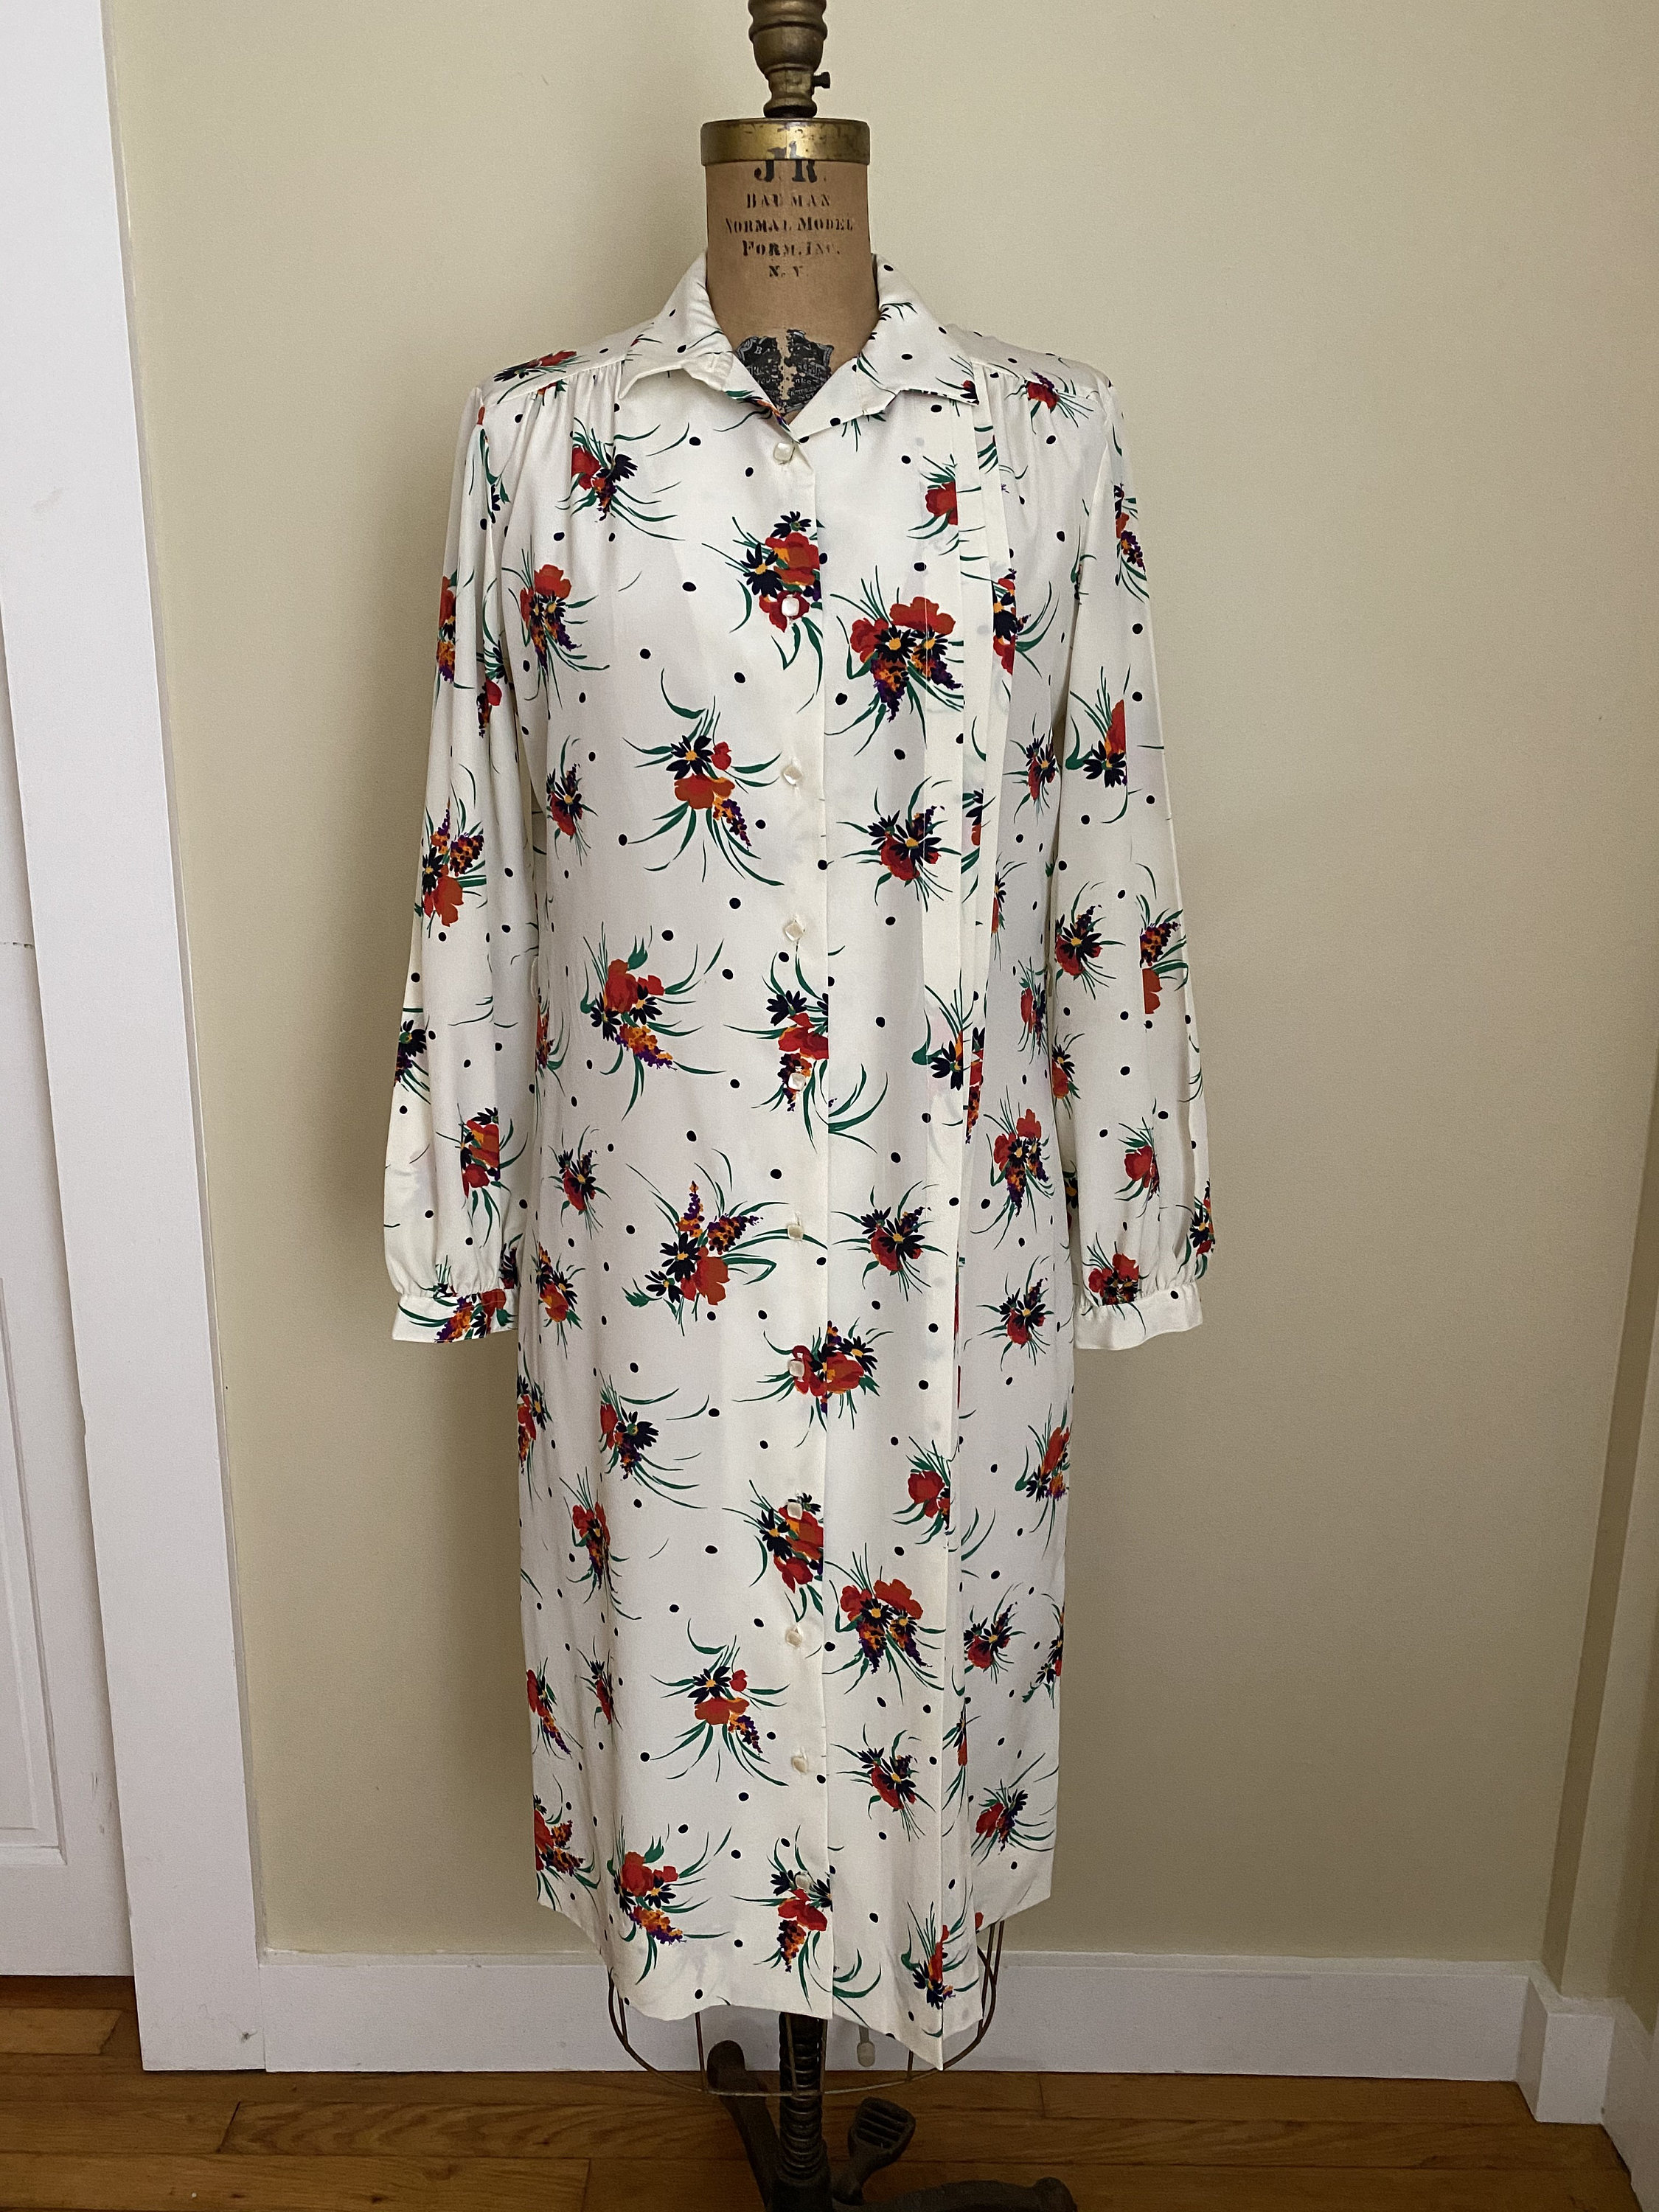 Vintage Lanvin Floral Shirtdress 1970s Mod Floral Pattern - Etsy